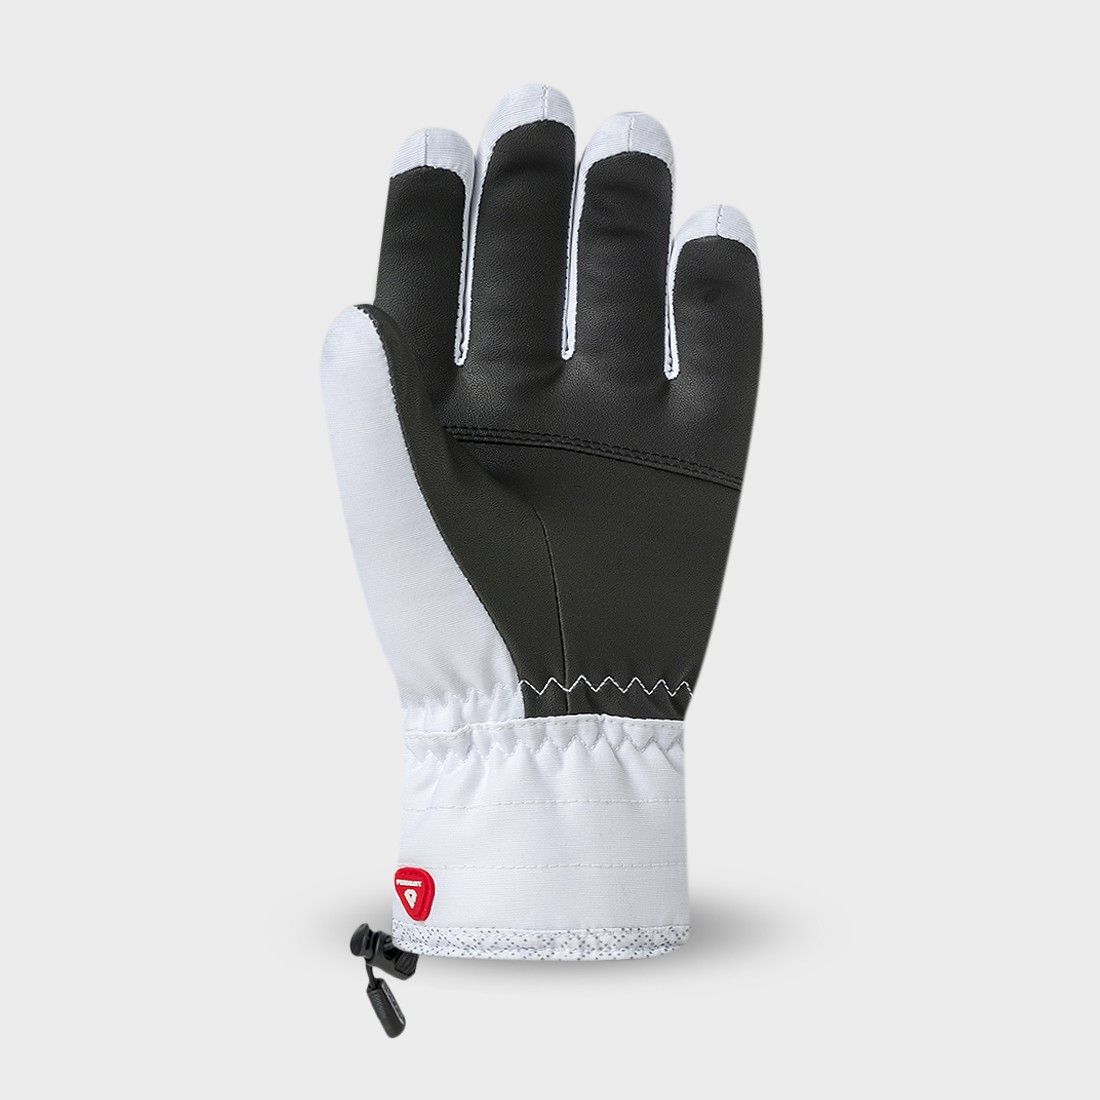 ALOMA 3 - Ski Gloves